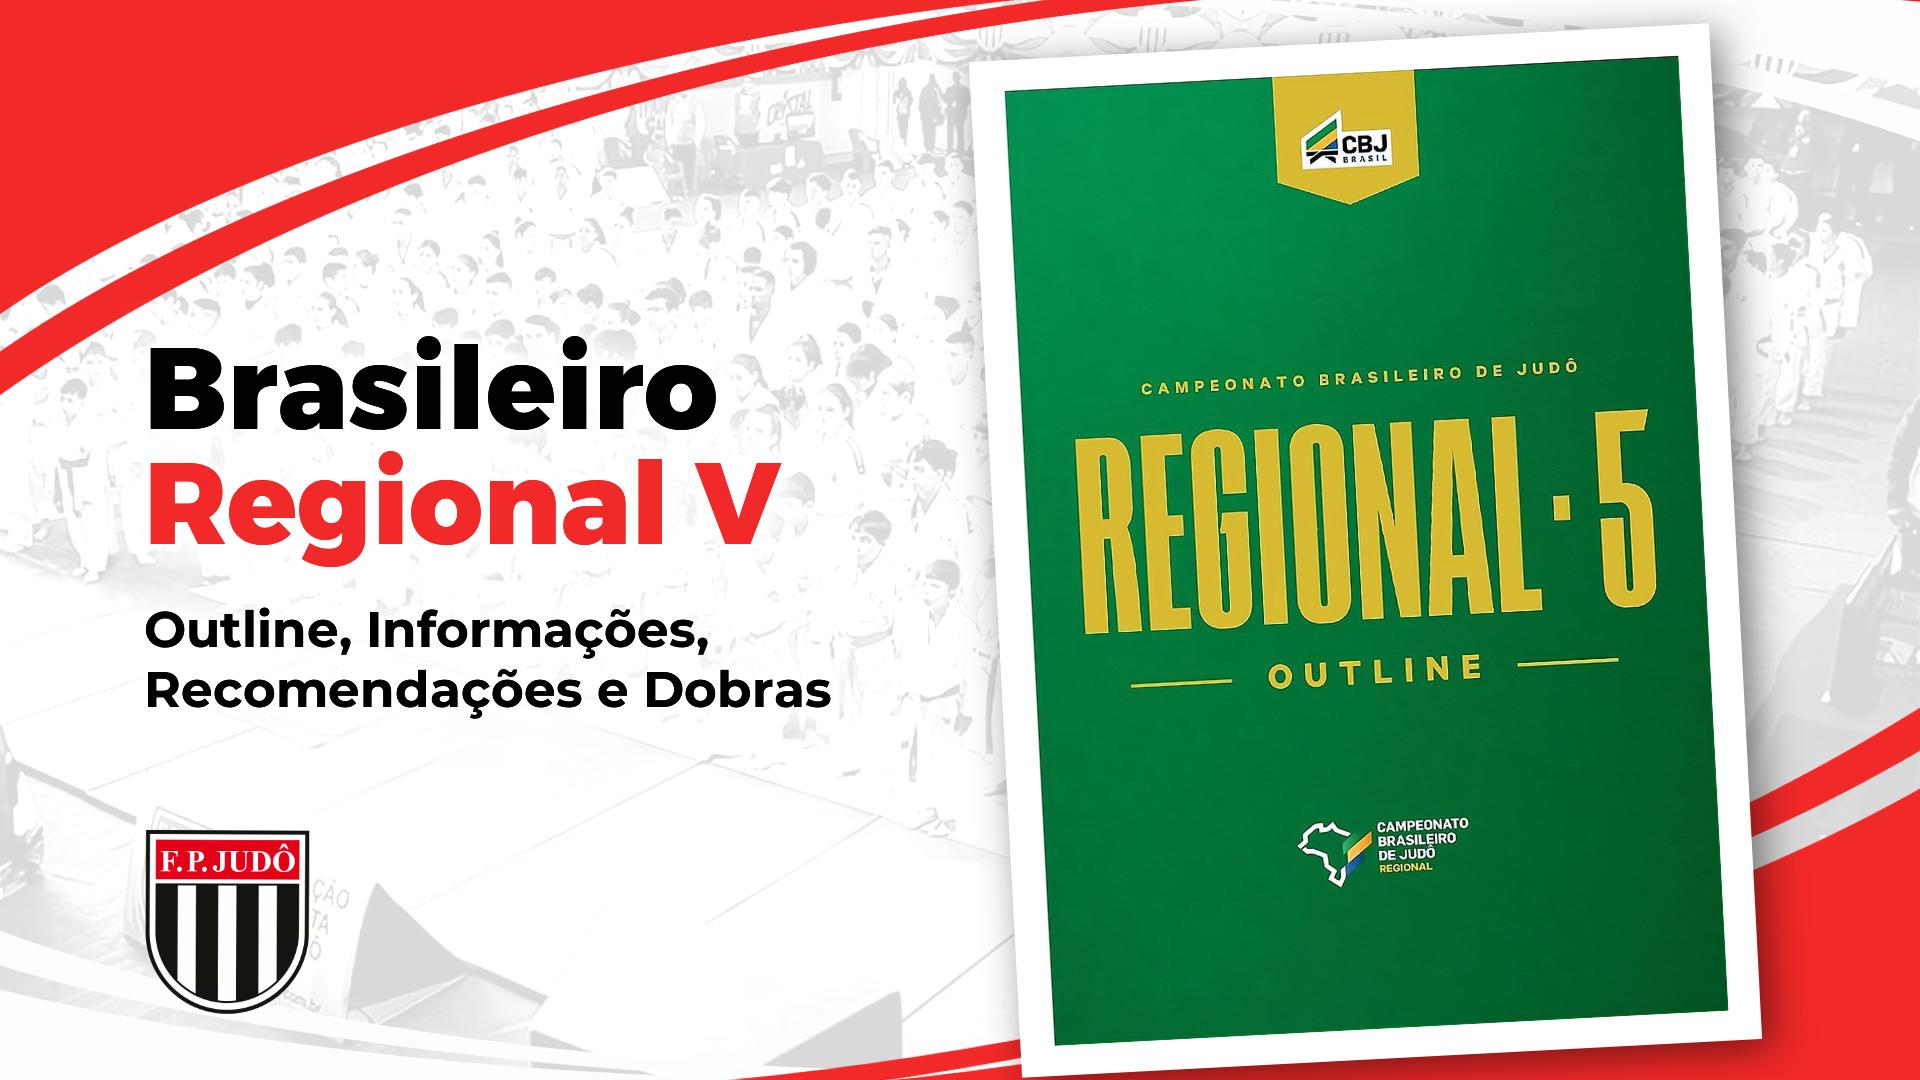 Outline Brasileiro Regional